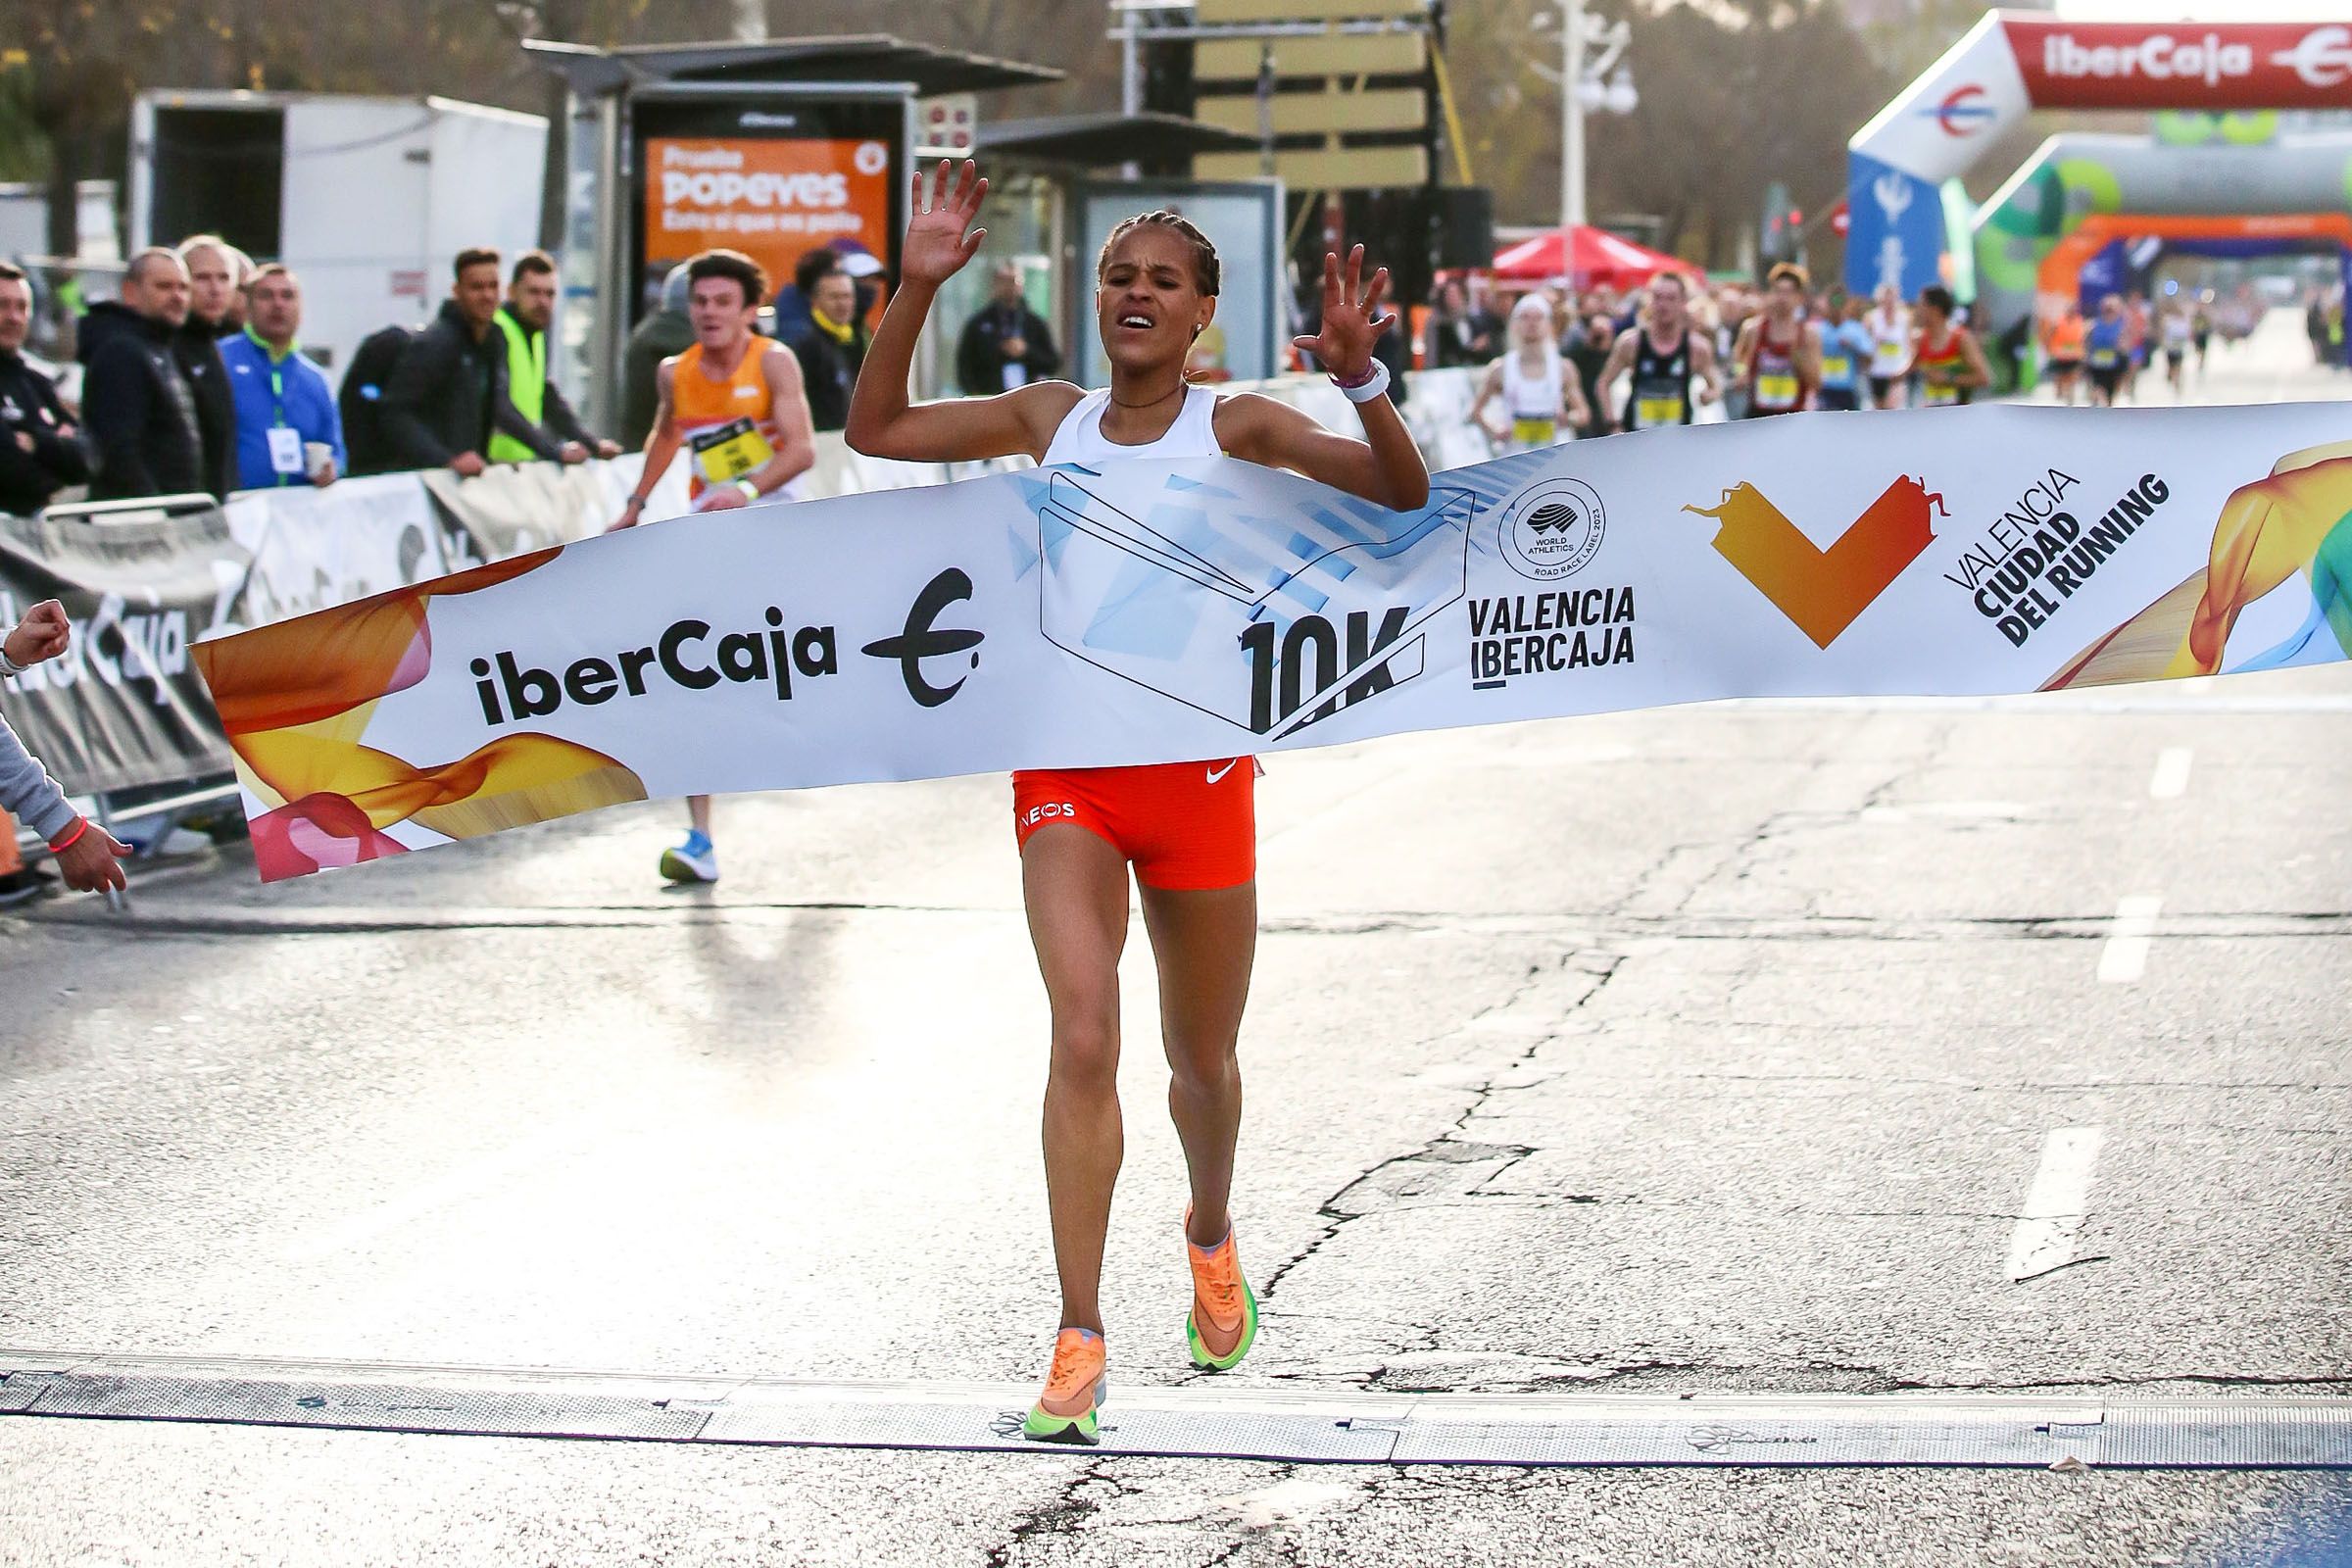 Yalemzerf Yehualaw wins the 10km Valencia Ibercaja